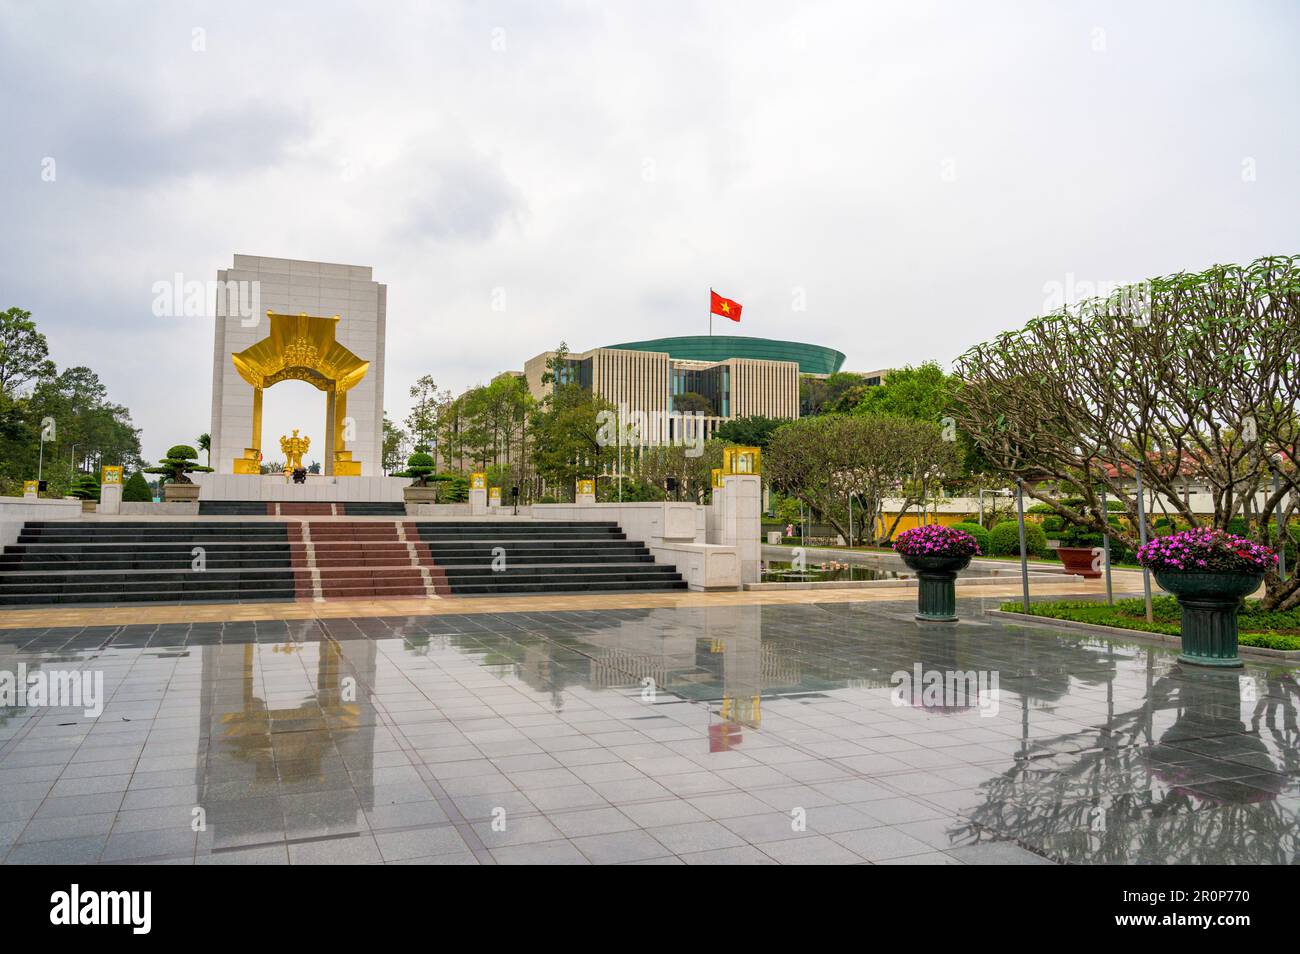 Monument de BAC son (Monument de guerre) avec l'Assemblée nationale en arrière-plan à Hanoi, Vietnam. Banque D'Images